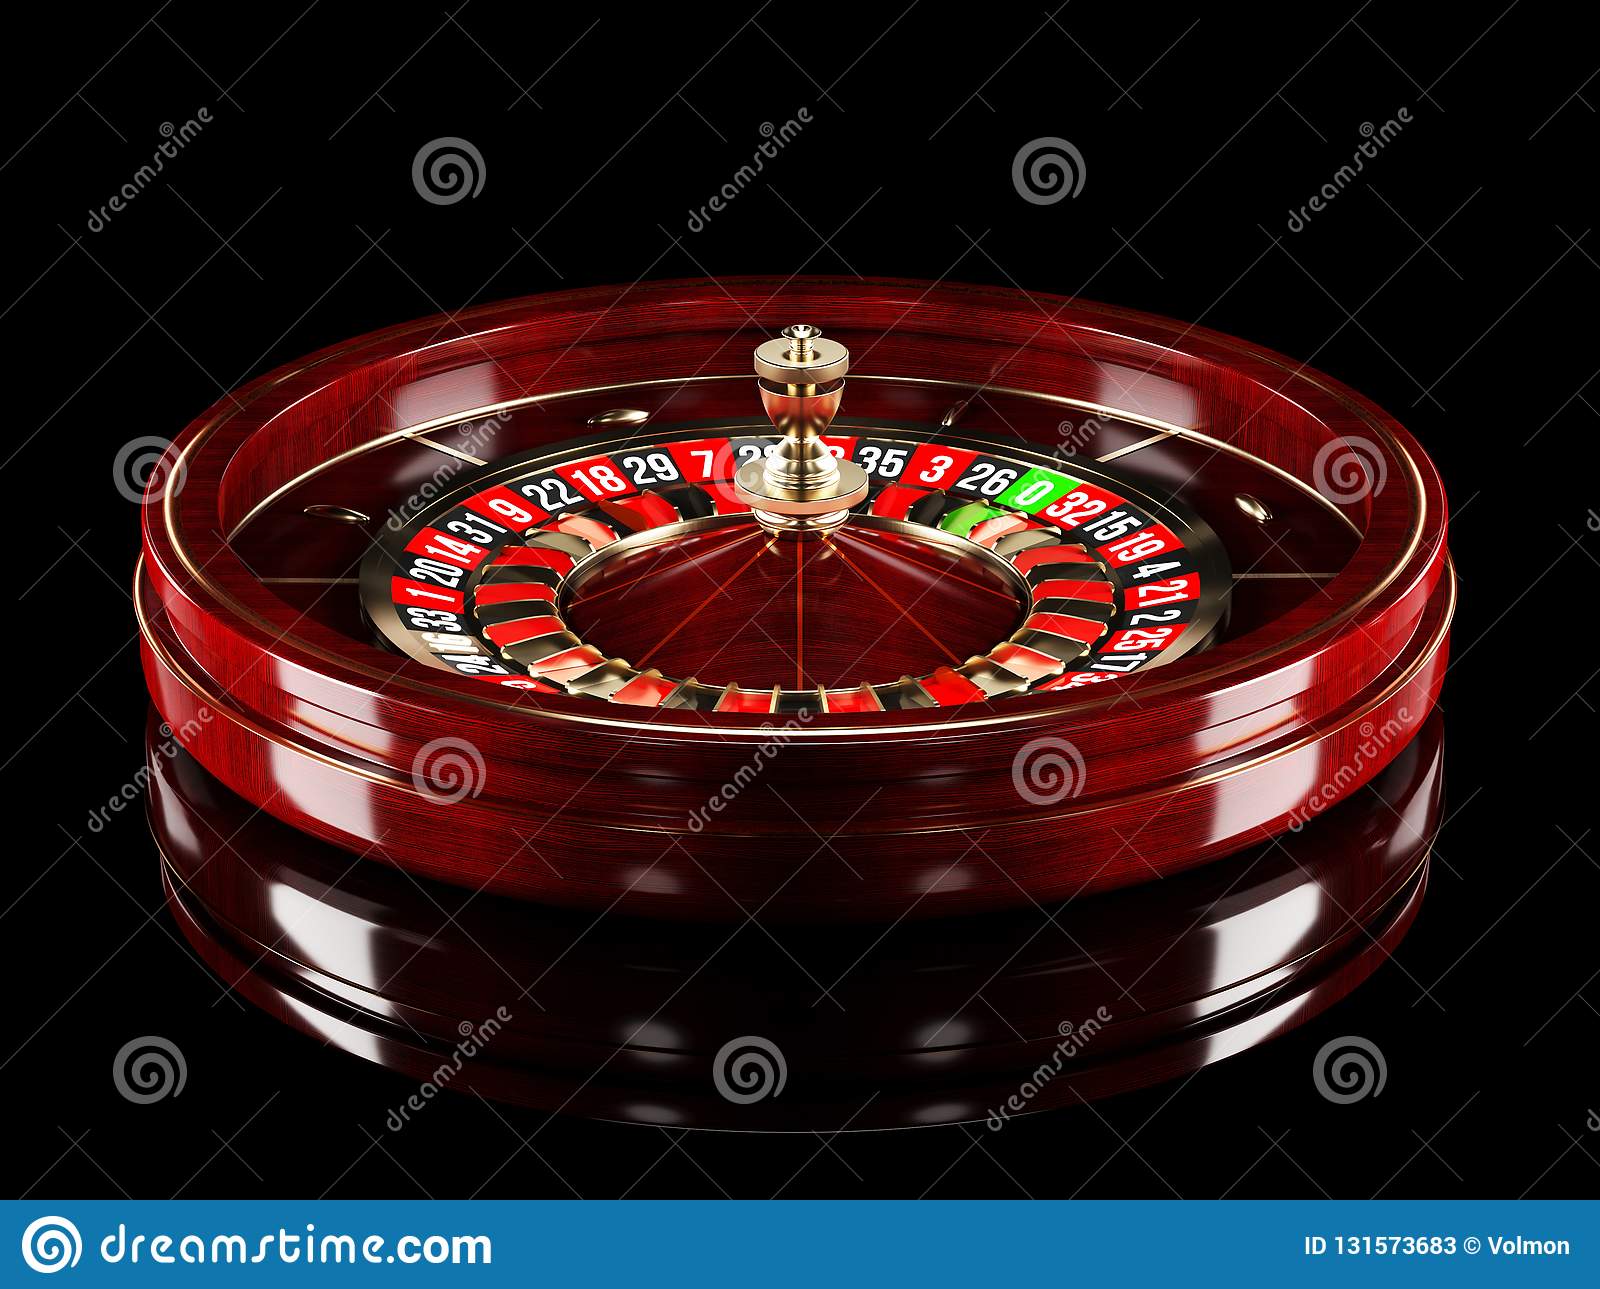 Slotbar canlı casino - online slot oyunları